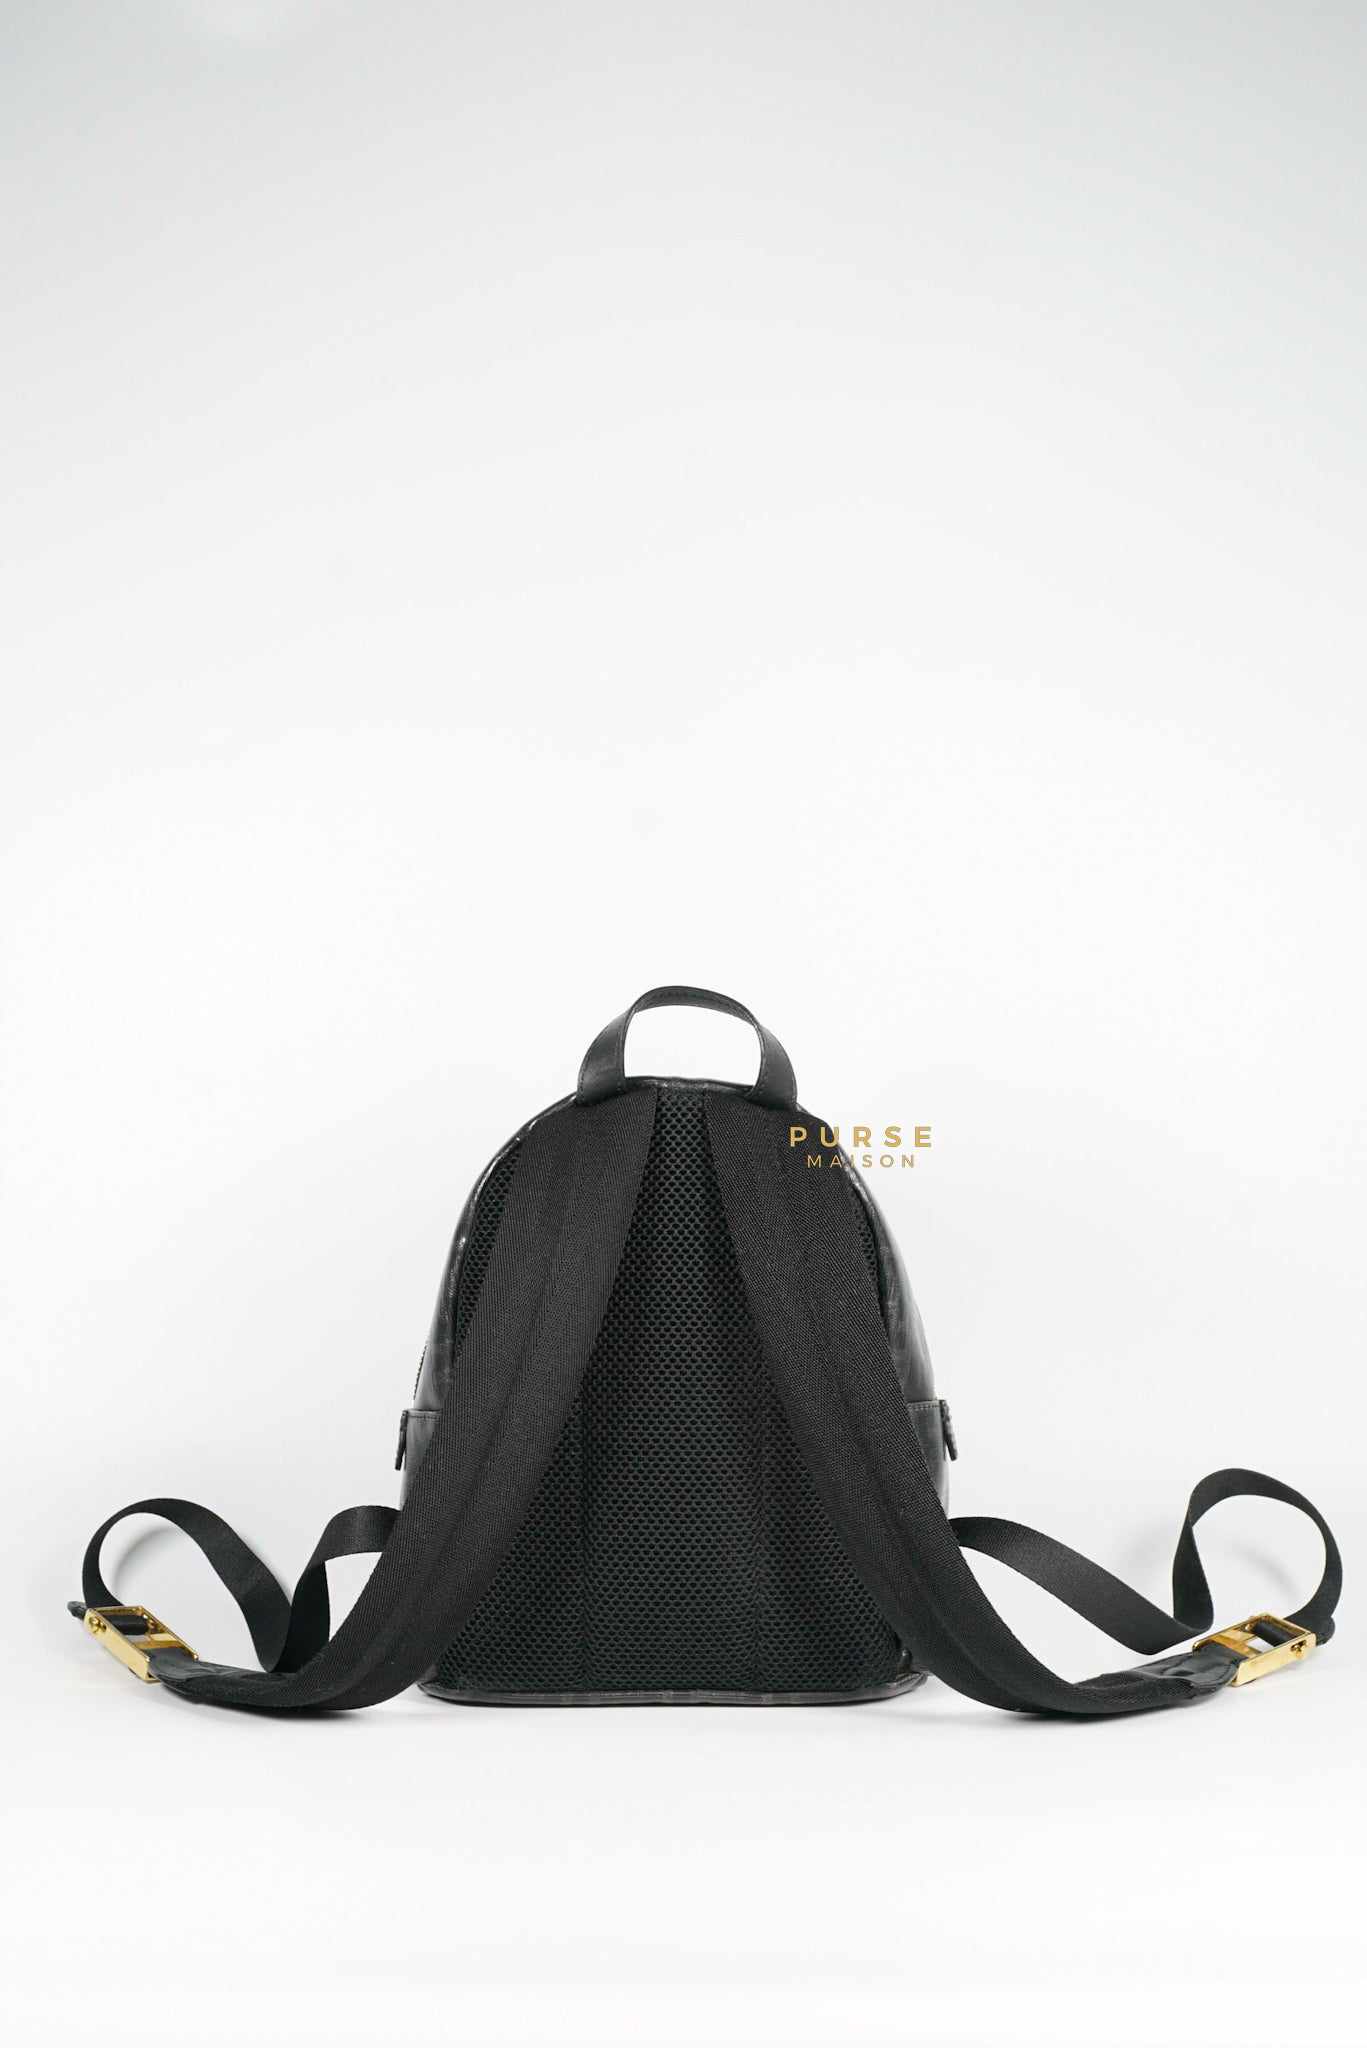 Fendi Mania Black Backpack